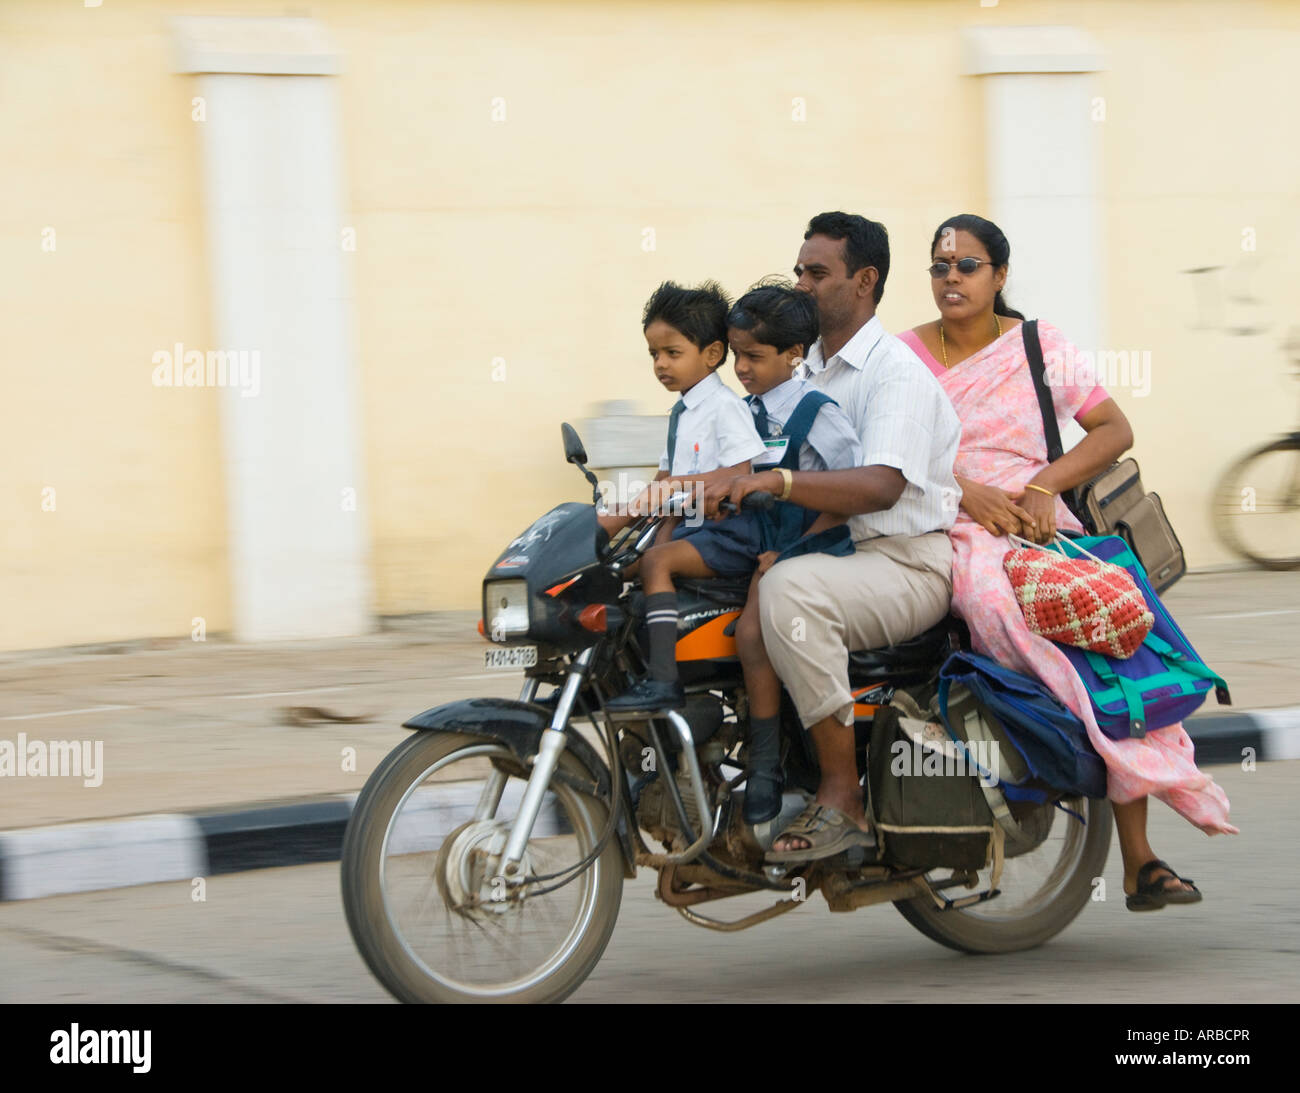 Eine indische Familie auf einem Motorrad in Indien. Ratan Tata hat gesagt, da ganze Famiies auf einem Fahrrad seine Inspiration für den Nano war Stockfoto